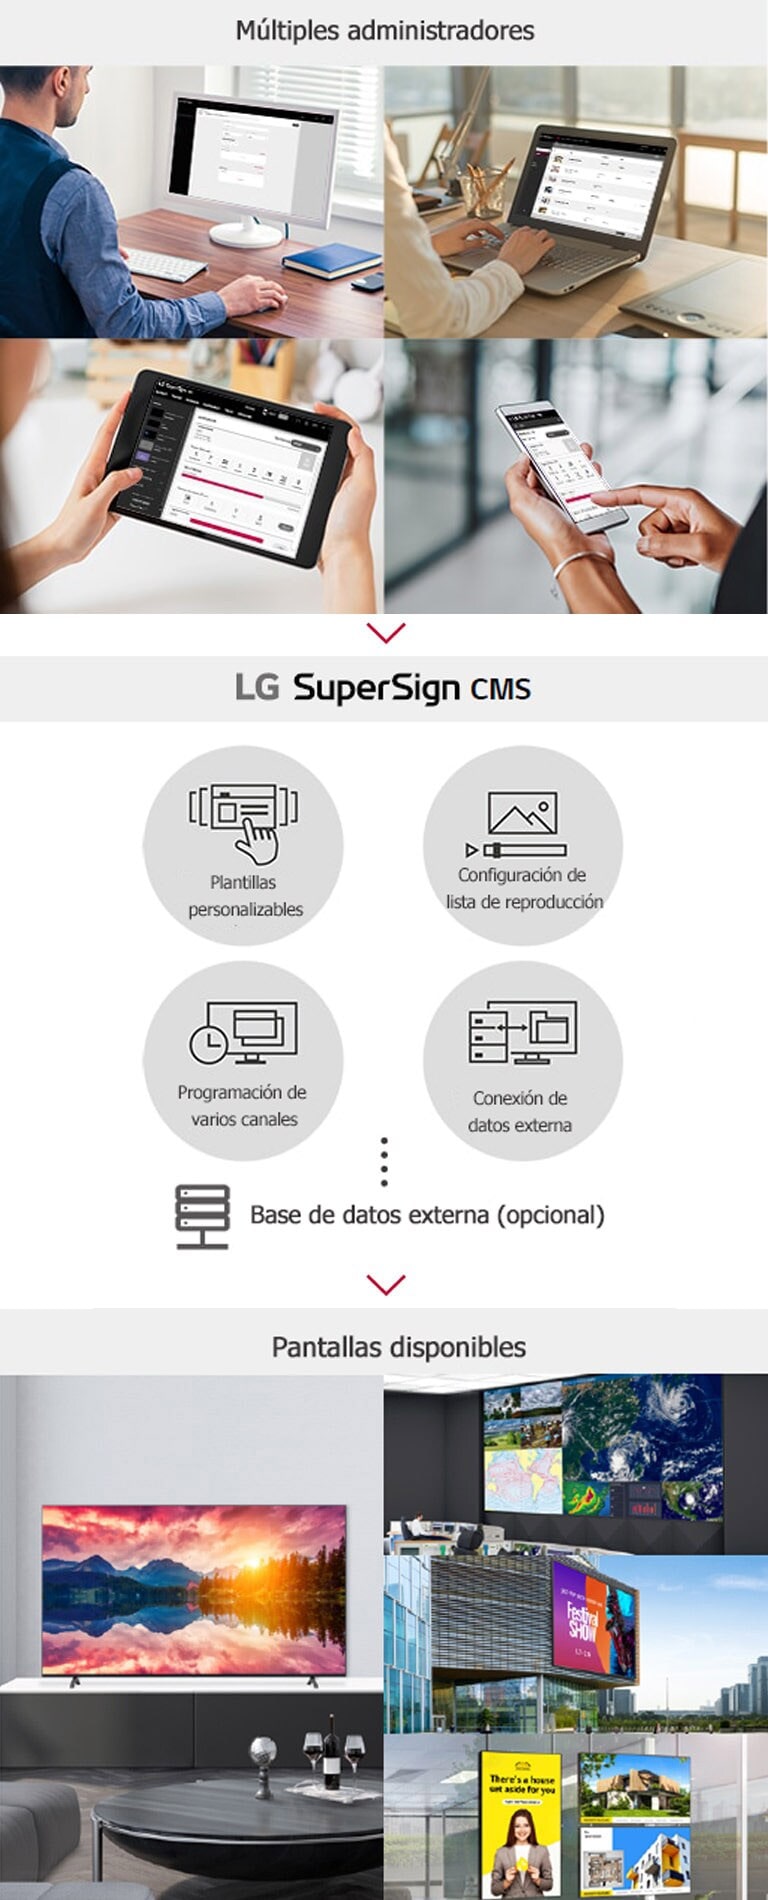 Múltiples administradores pueden acceder a SuperSign CMS de LG a través de una computadora, computadora portátil, una tableta y dispositivos móviles para crear, regular y distribuir contenido multimedia digital adaptado a una amplia gama de pantallas.